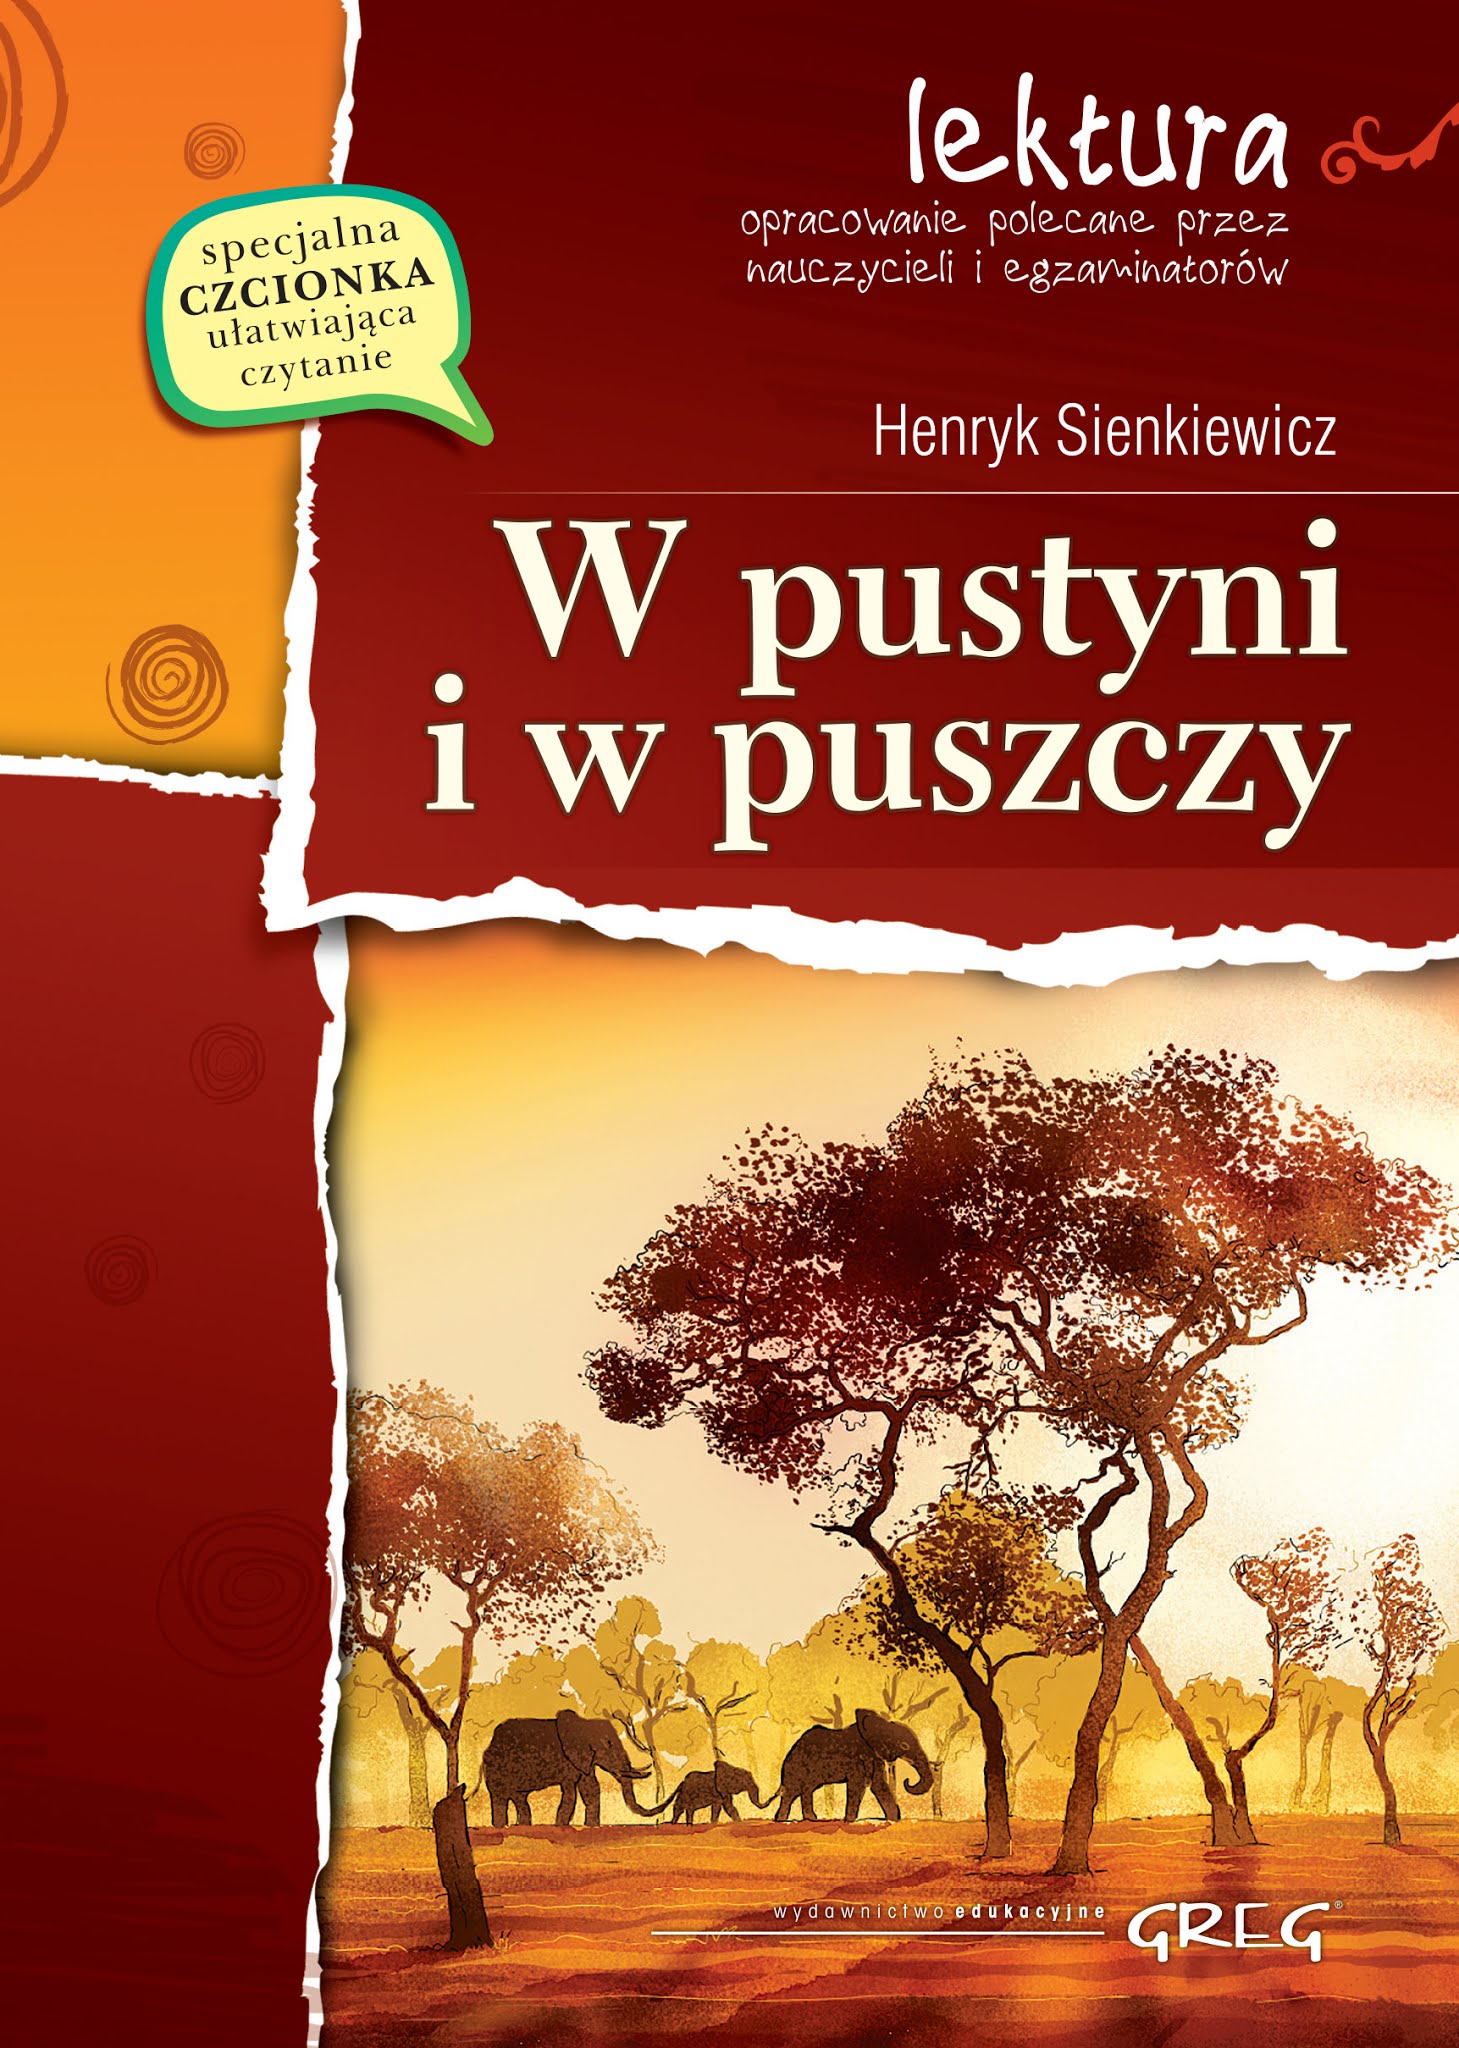 Plemiona W Pustyni Iw Puszczy W pustyni i w puszczy (Henryk Sienkiewicz) książka w księgarni